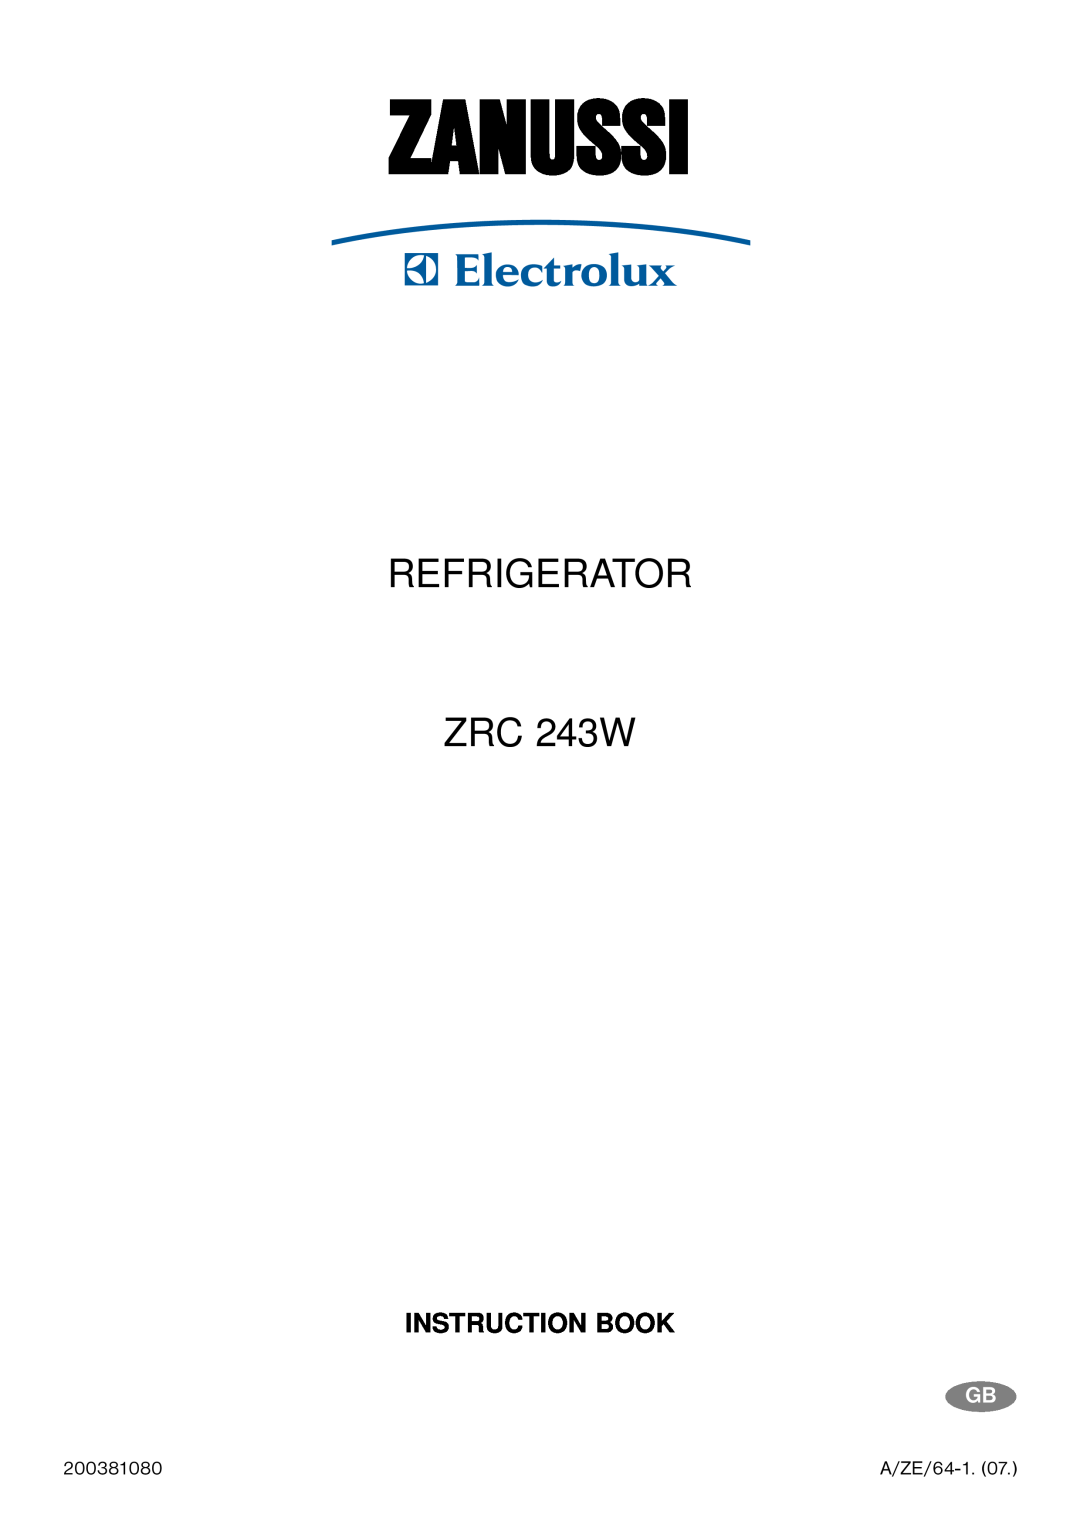 Zanussi manual Zanussi, REFRIGERATOR ZRC 243W, Instruction Book, A/ZE/64-1.07 